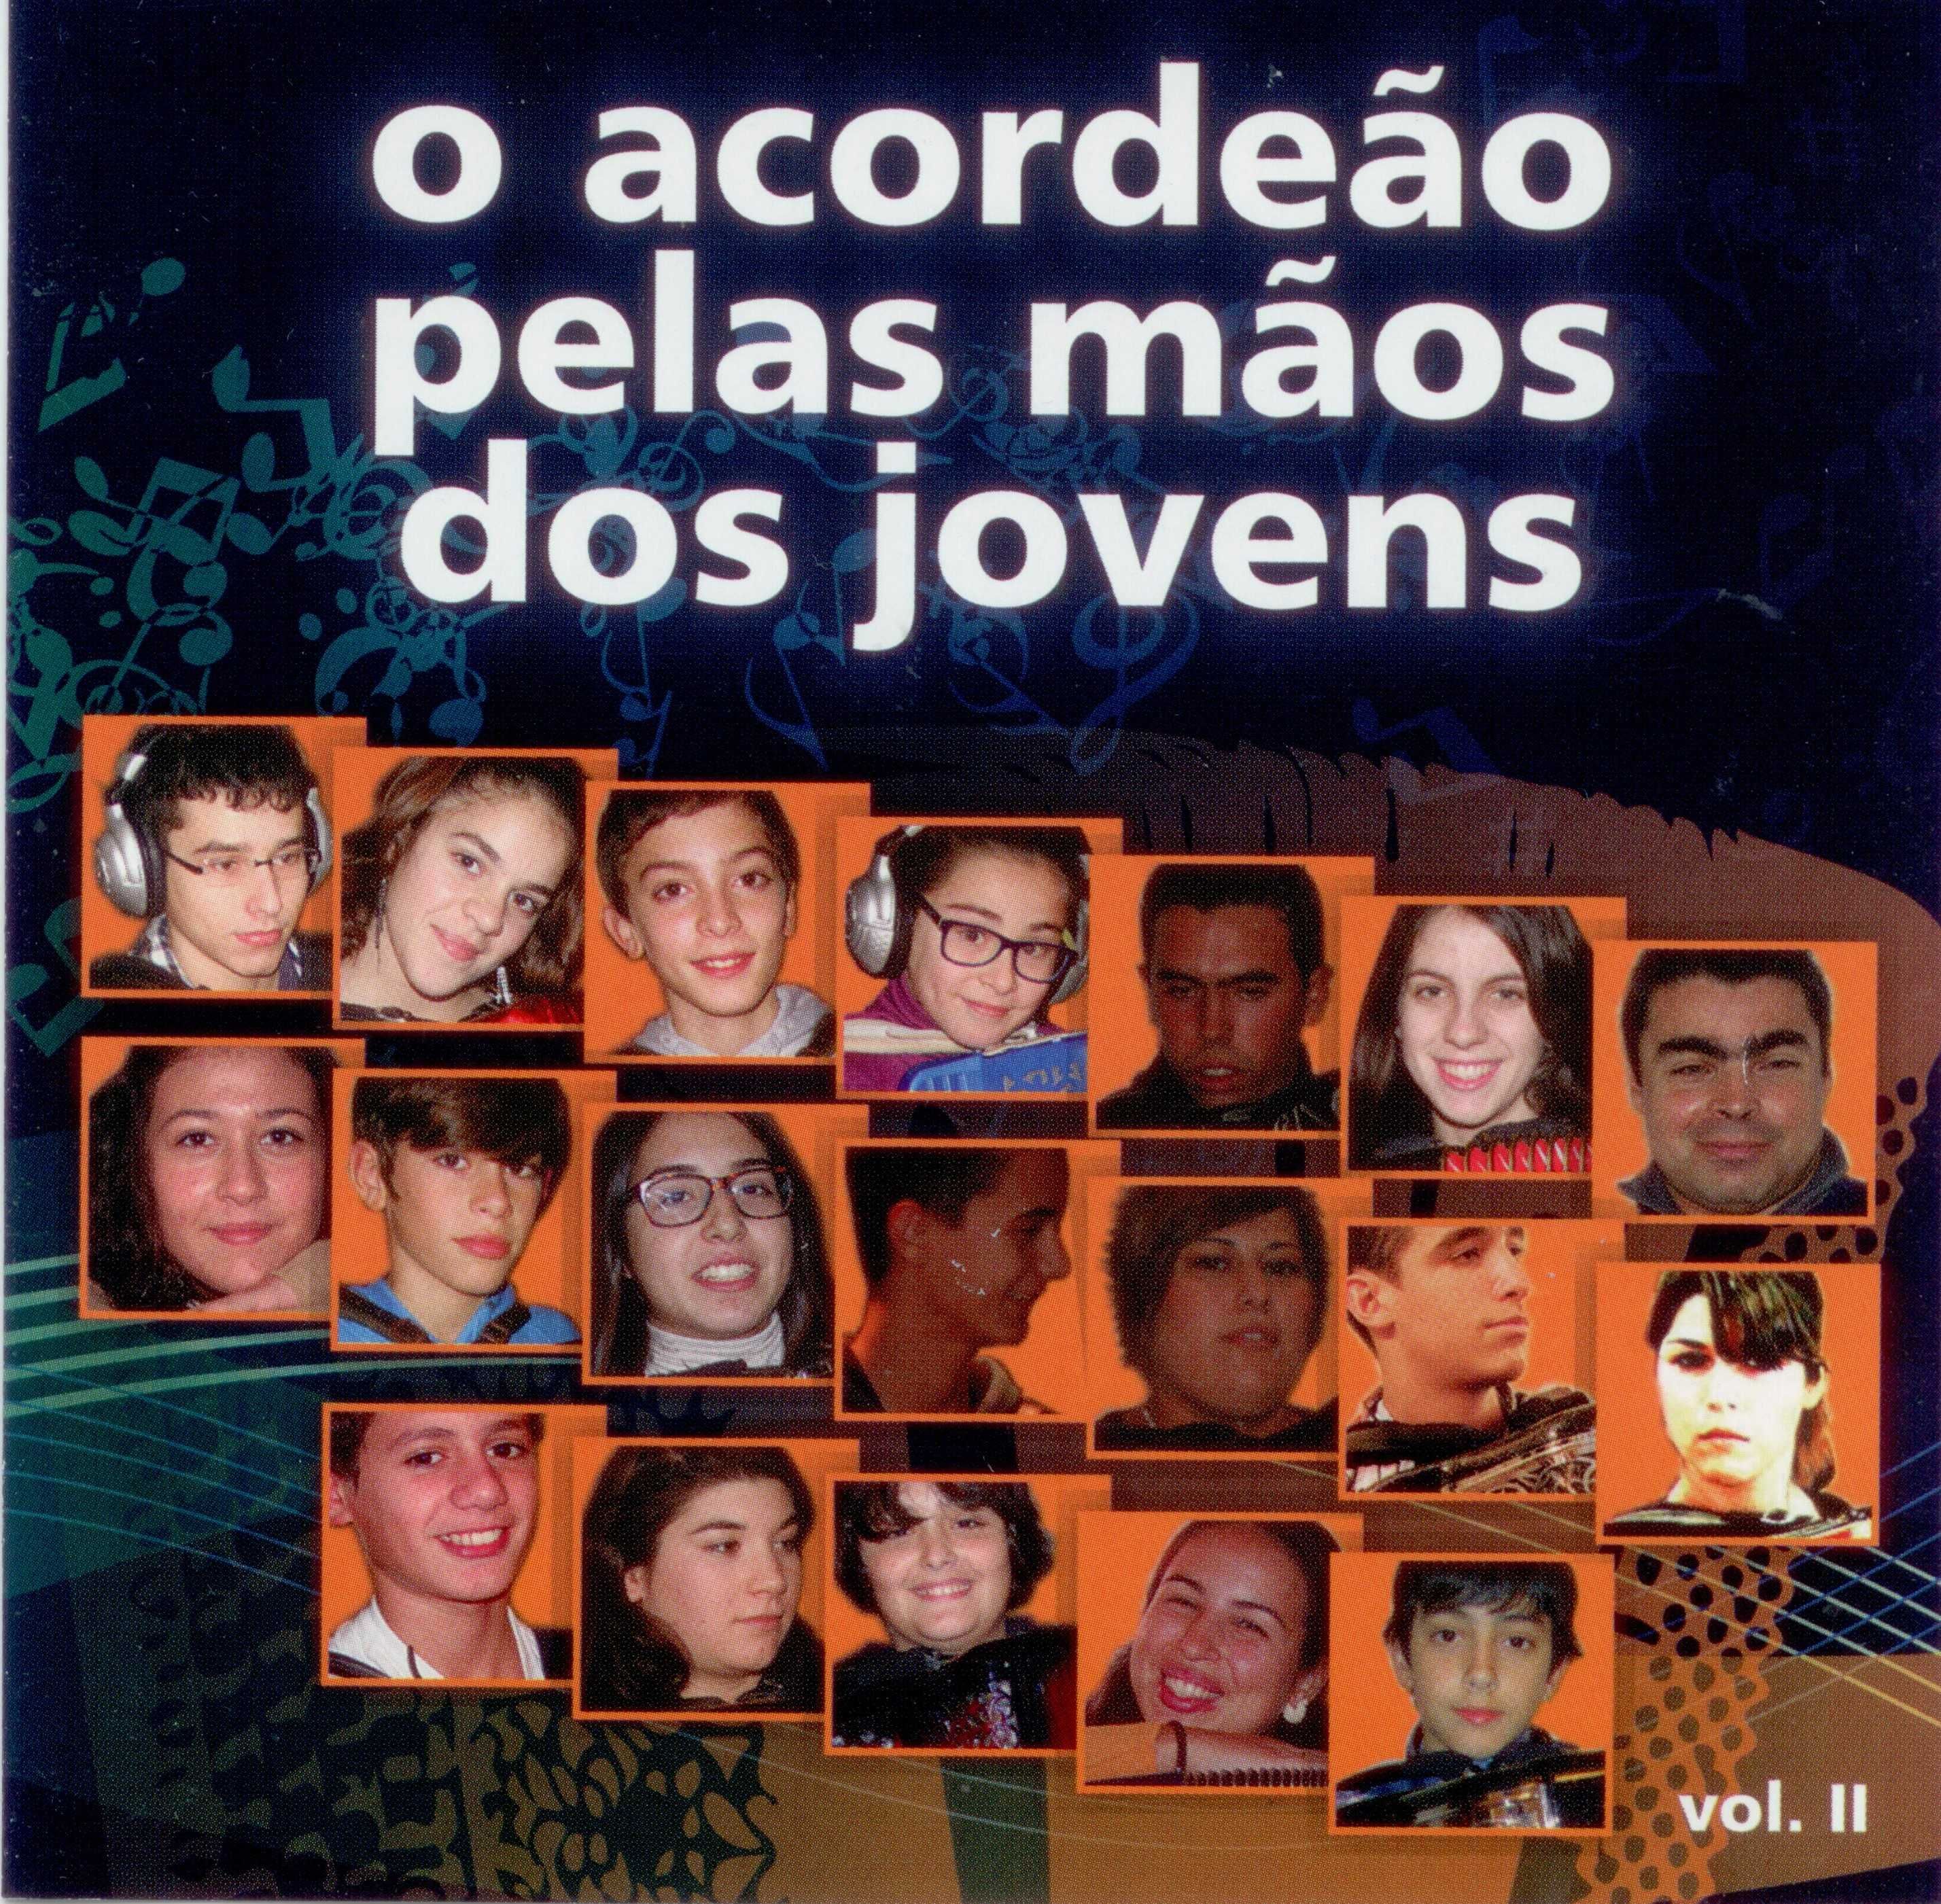 Coleção 5 CDs   "O Acordeão pelas mãos dos jovens" - 123 músicas